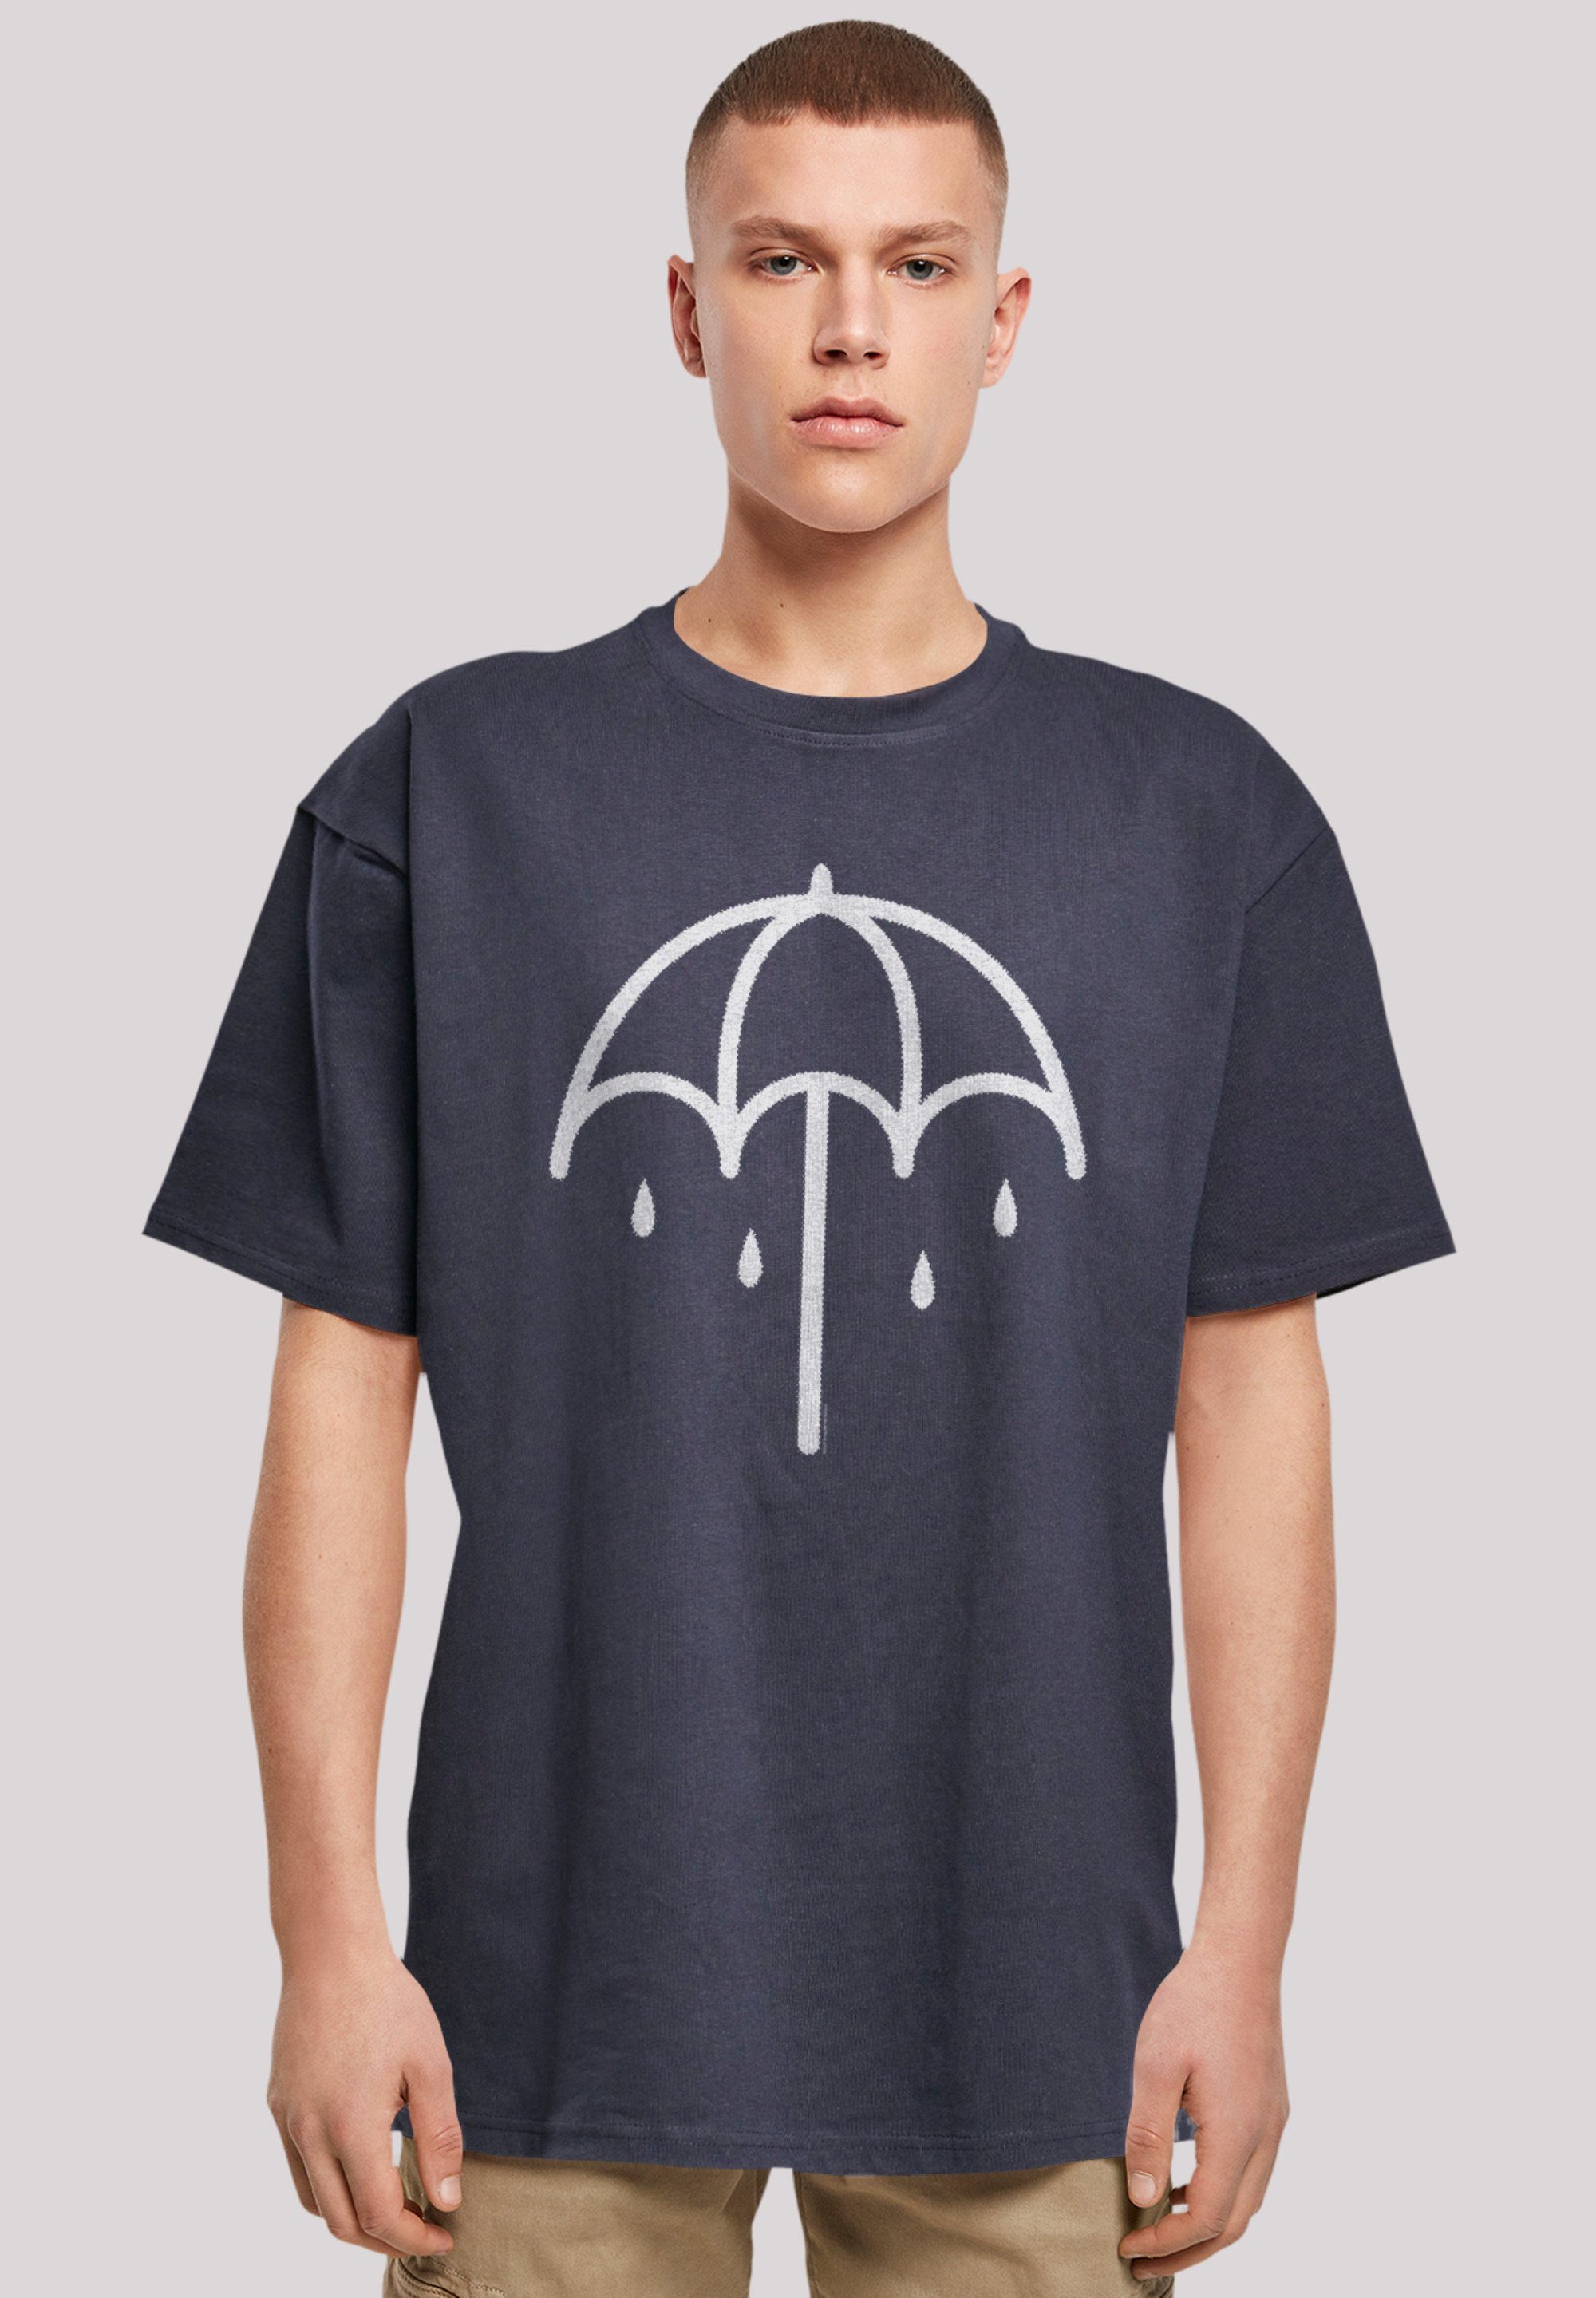 F4NT4STIC T-Shirt BMTH Metal Band Umbrella 2 DARK Premium Qualität, Rock- Musik, Band, Weite Passform und überschnittene Schultern